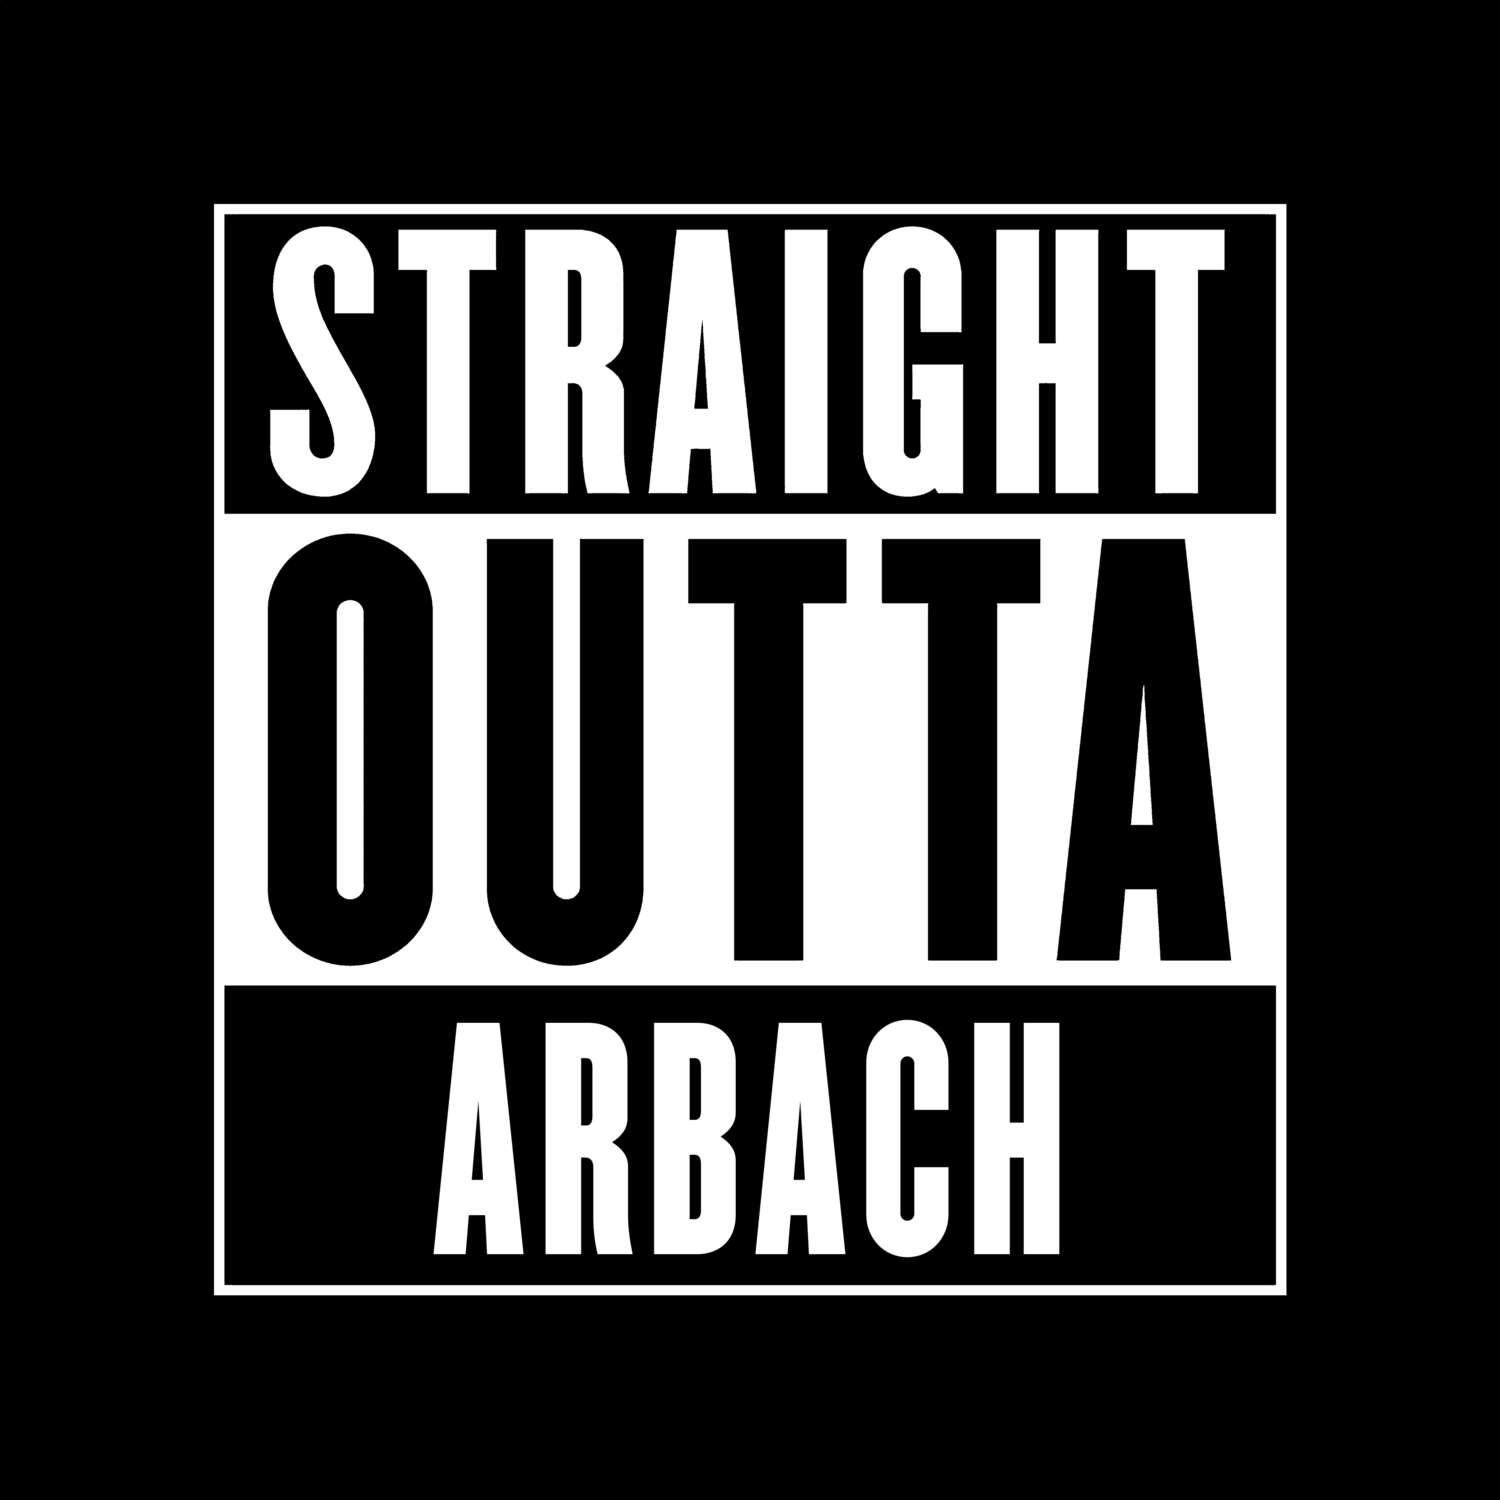 Arbach T-Shirt »Straight Outta«